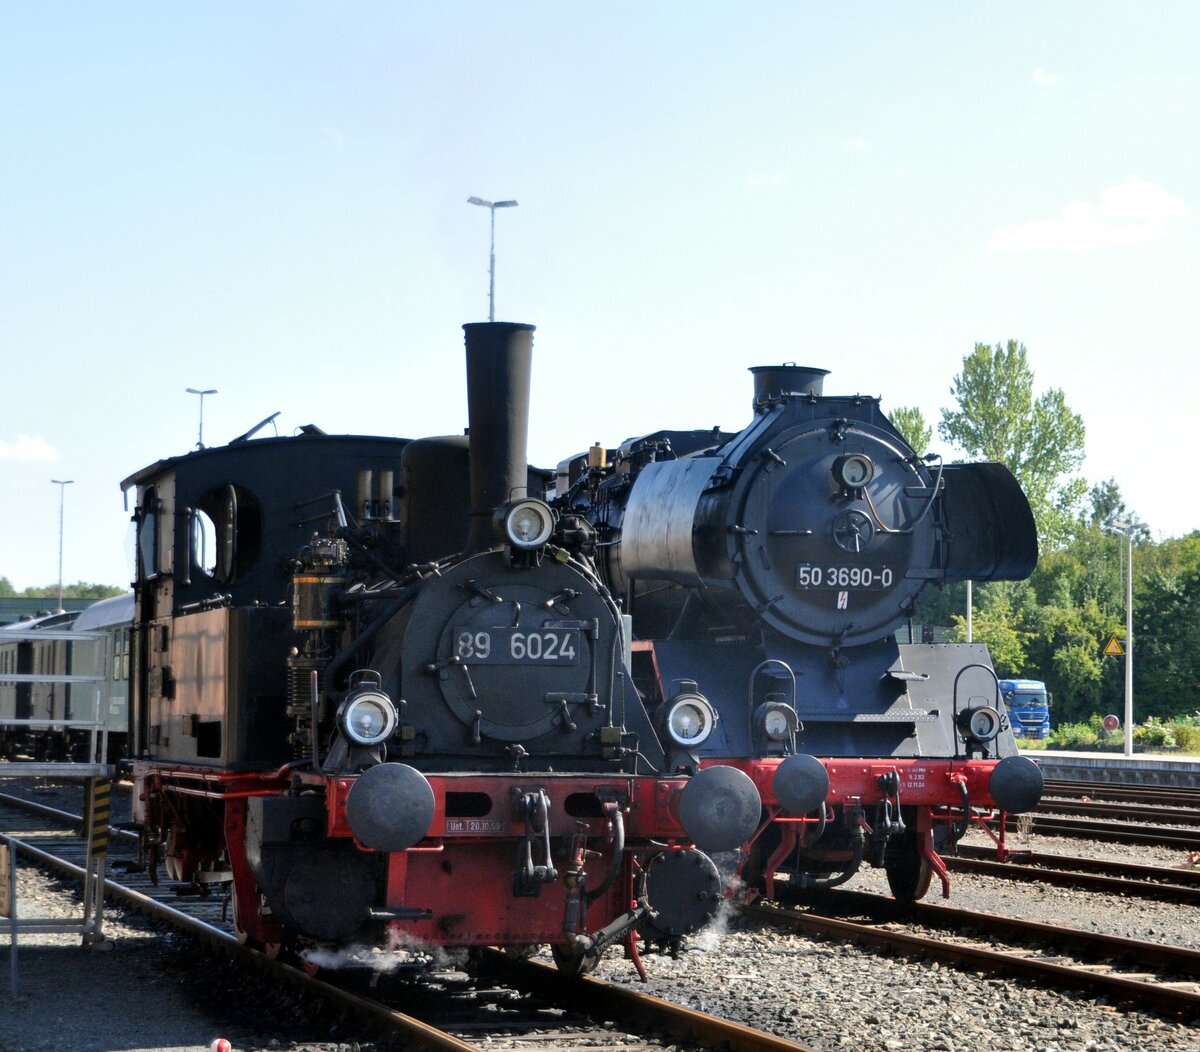 89 6024 und 50 3690-0 im eutschen Dampflok-Museum (DDM) in Neuenmarkt Wirsberg am 03.09.2011.